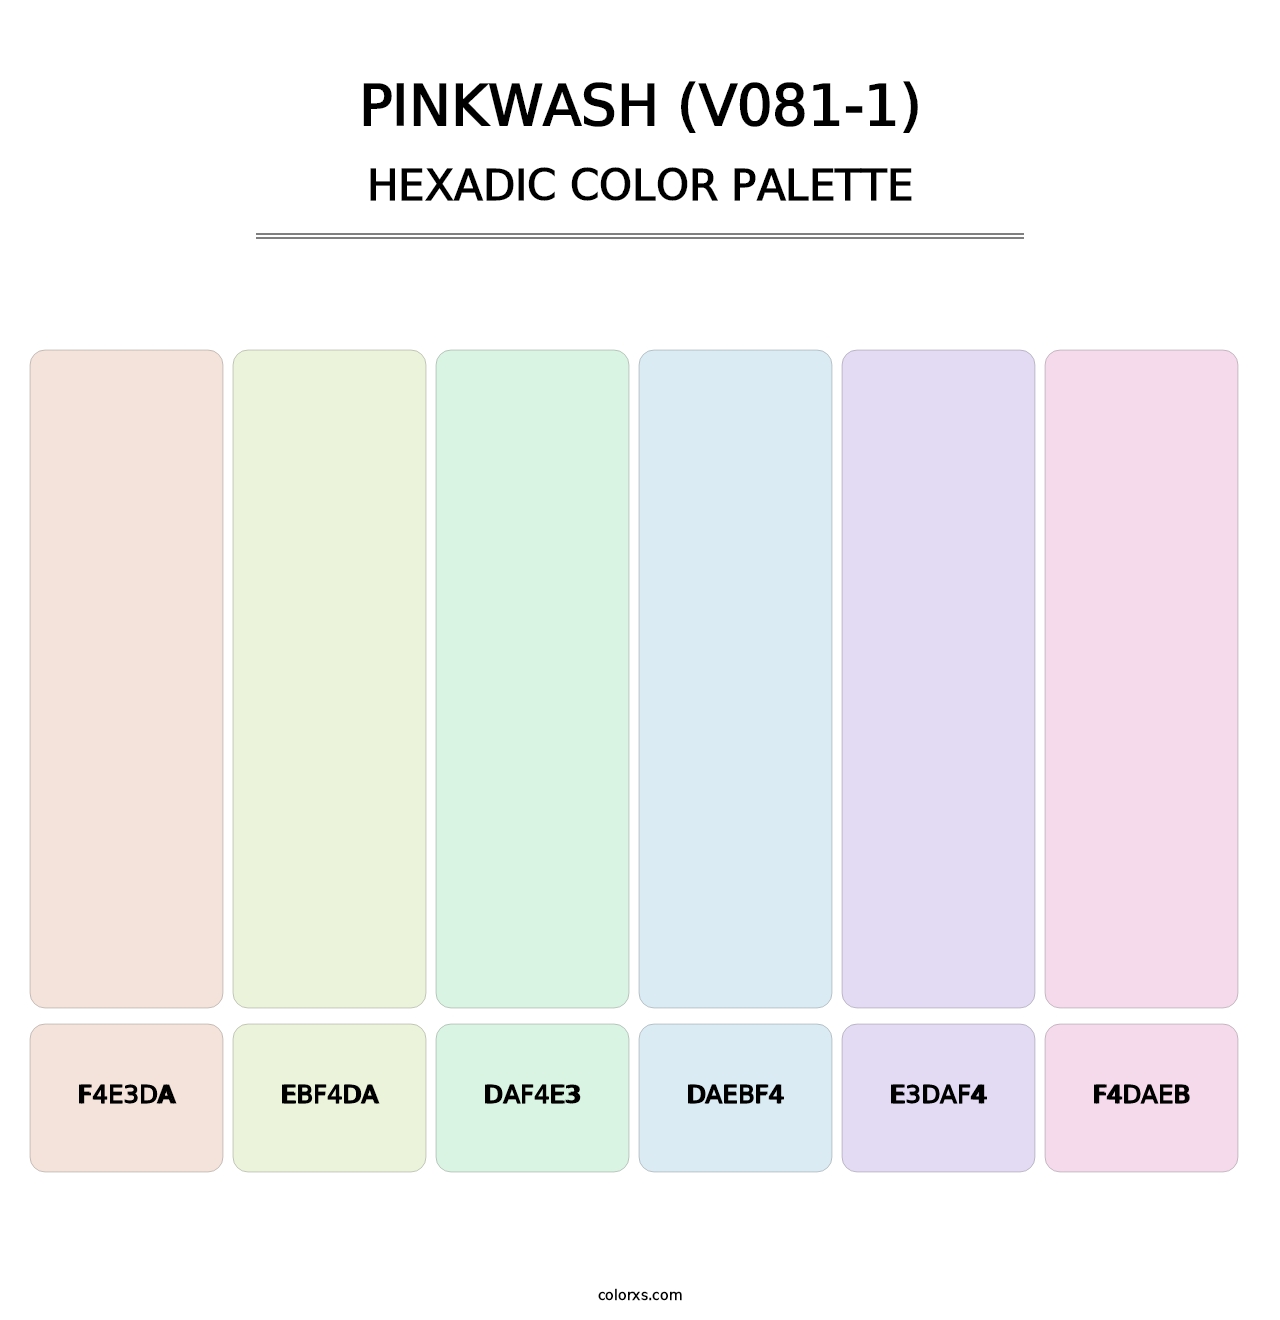 Pinkwash (V081-1) - Hexadic Color Palette